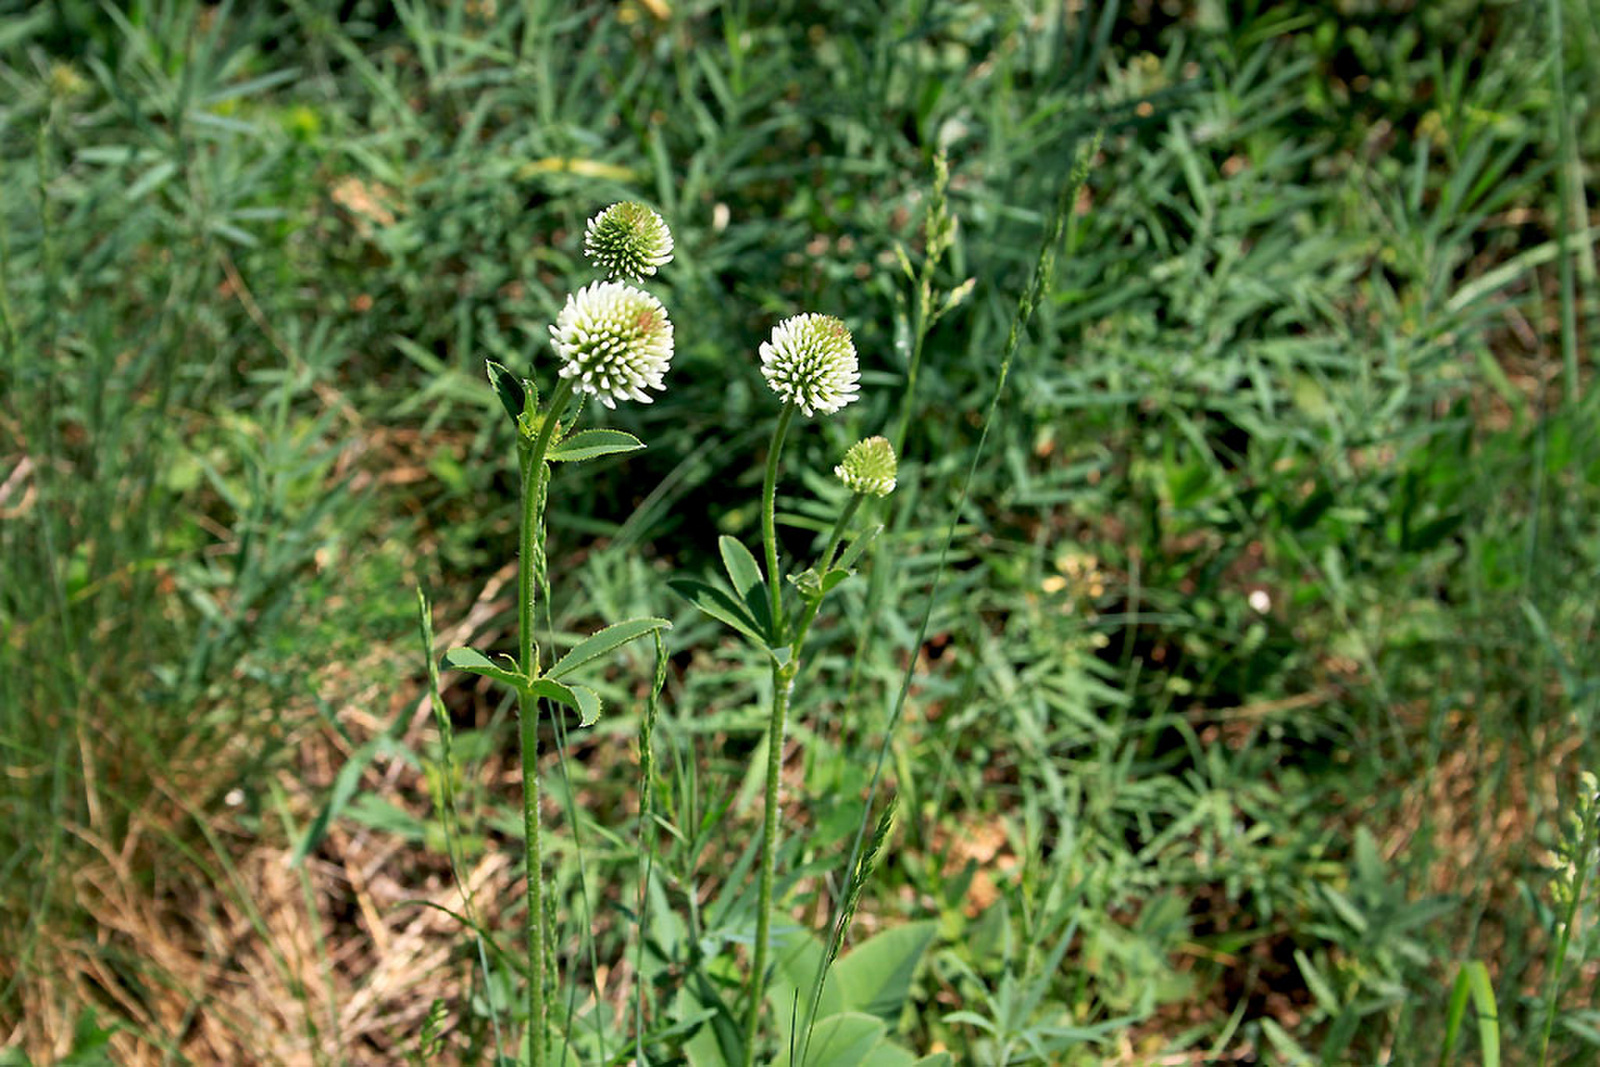 Trifolium montanum - hegyi here